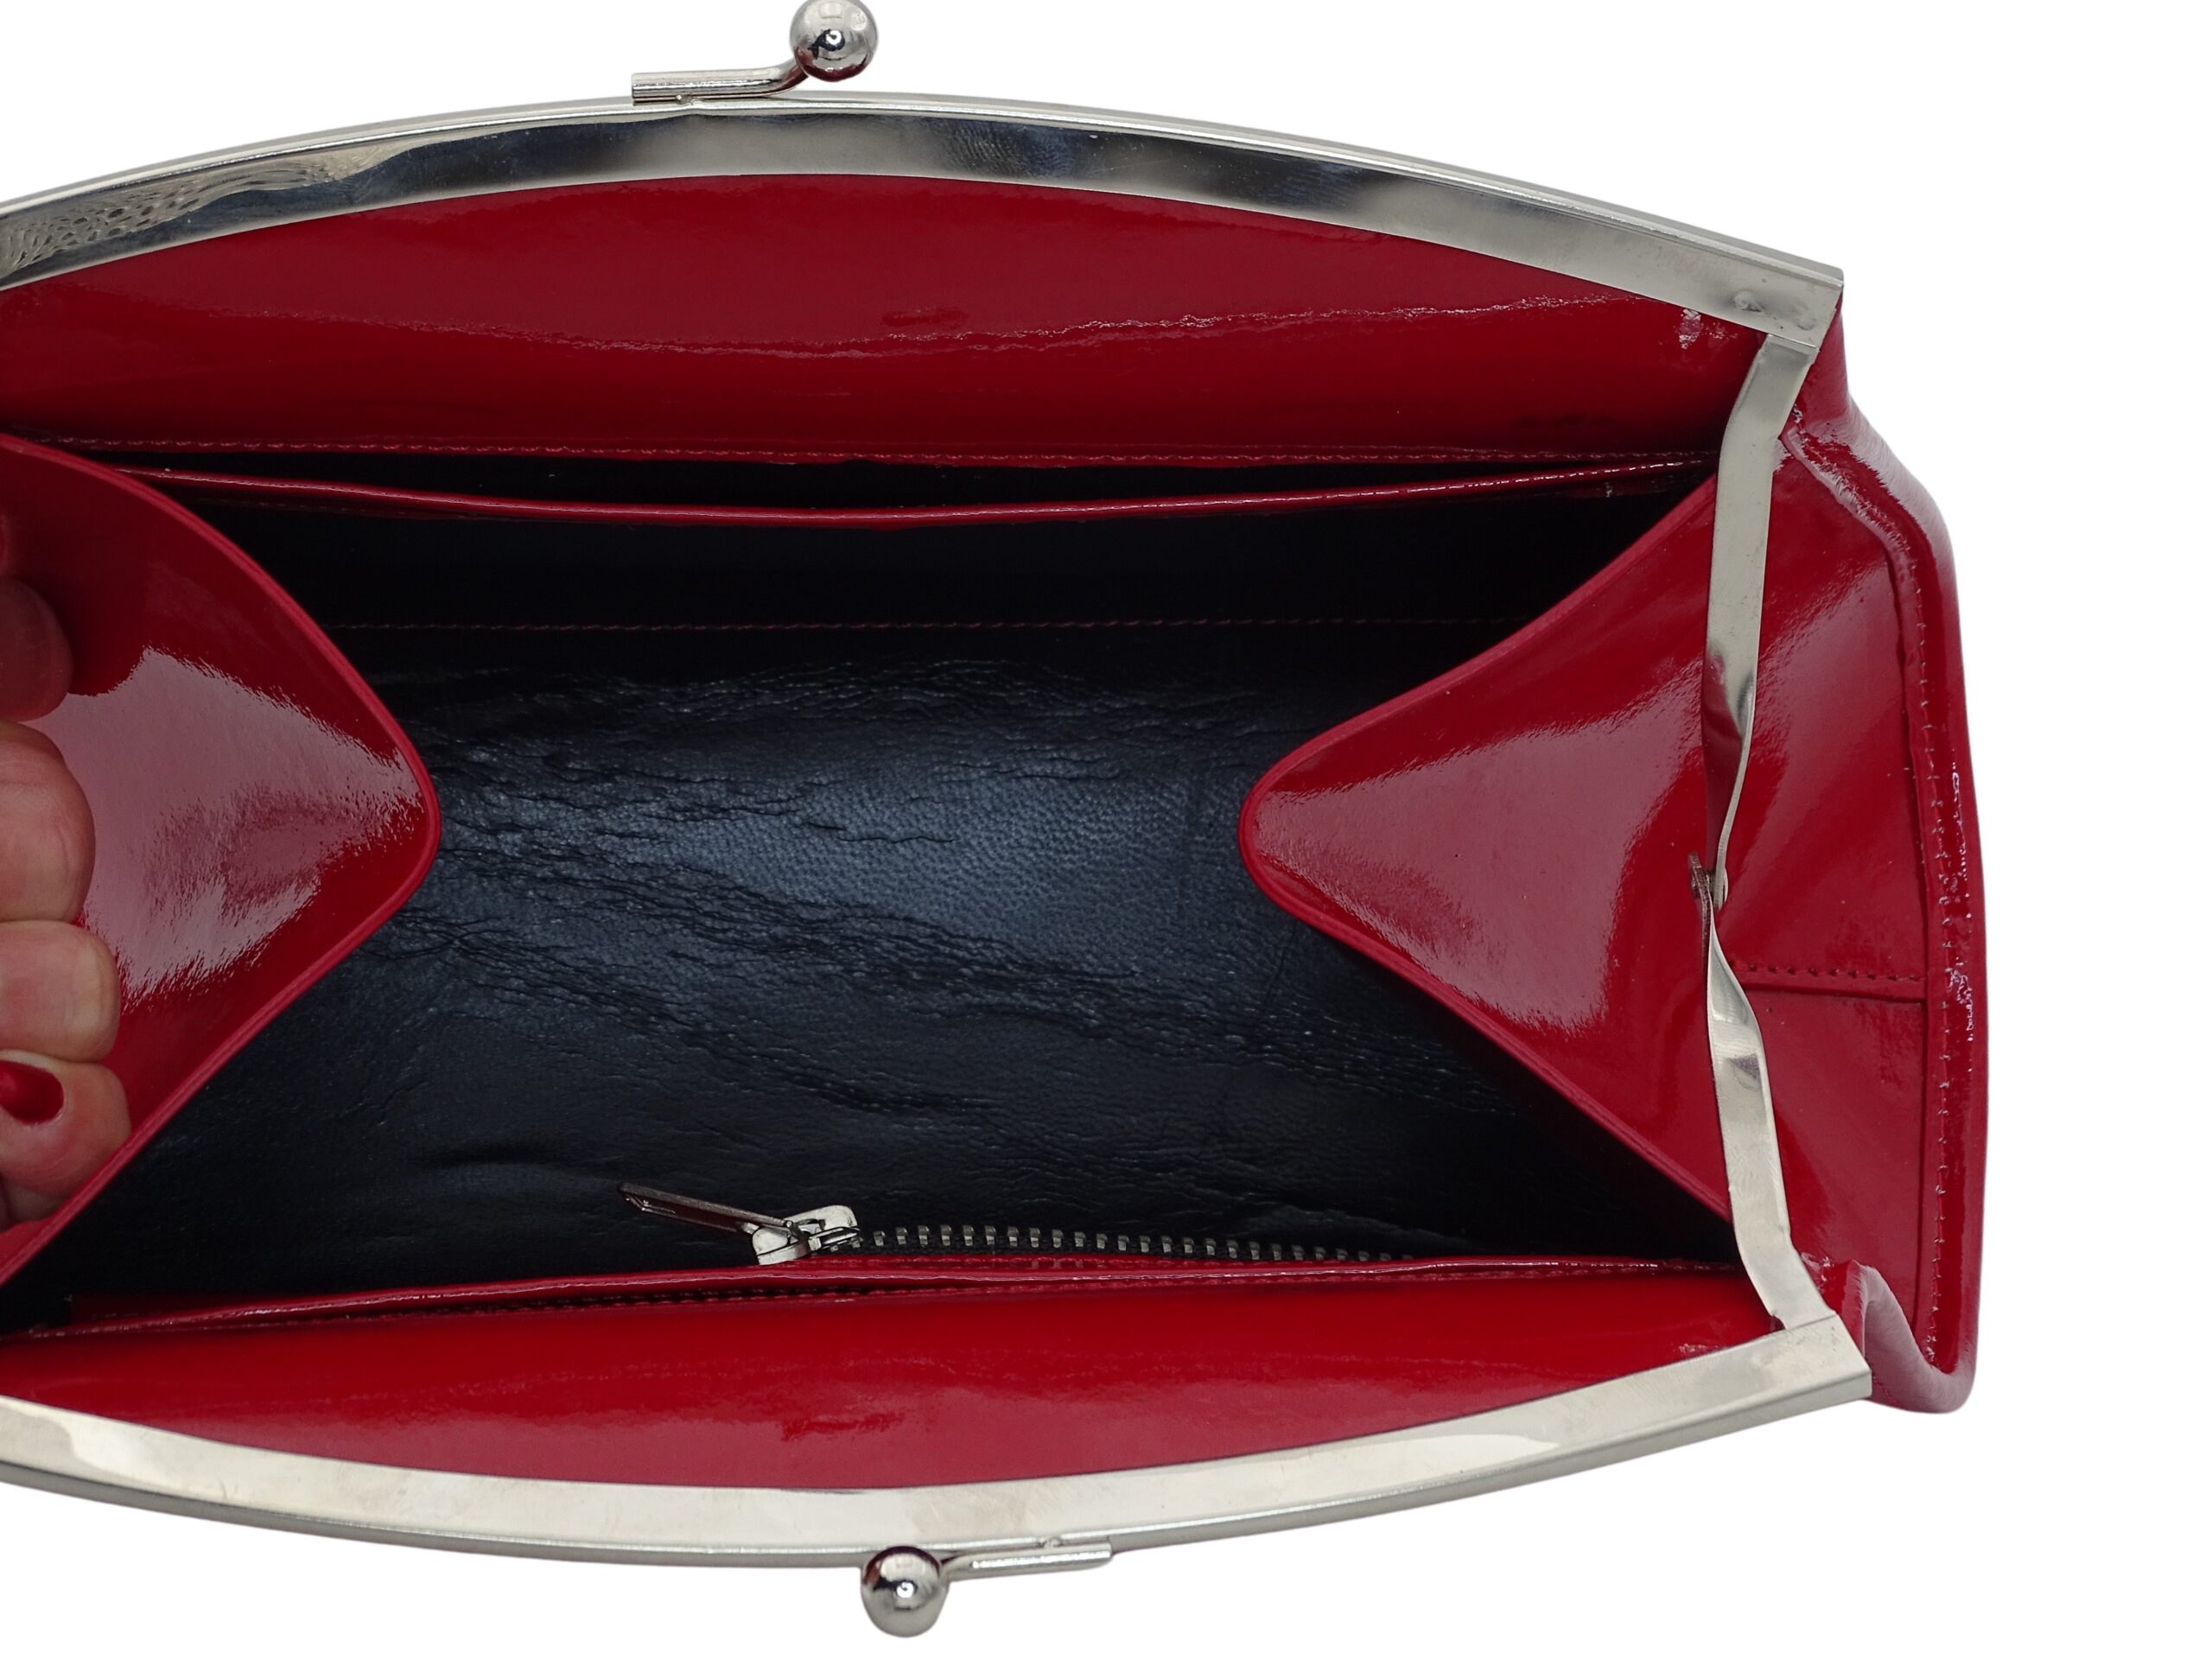 le sac à main marilyne est un sac en cuir véritable de la collection de la marque Vanamantys. Le cuir de haute qualité élève ce sac au range de la haute maroquinerie.